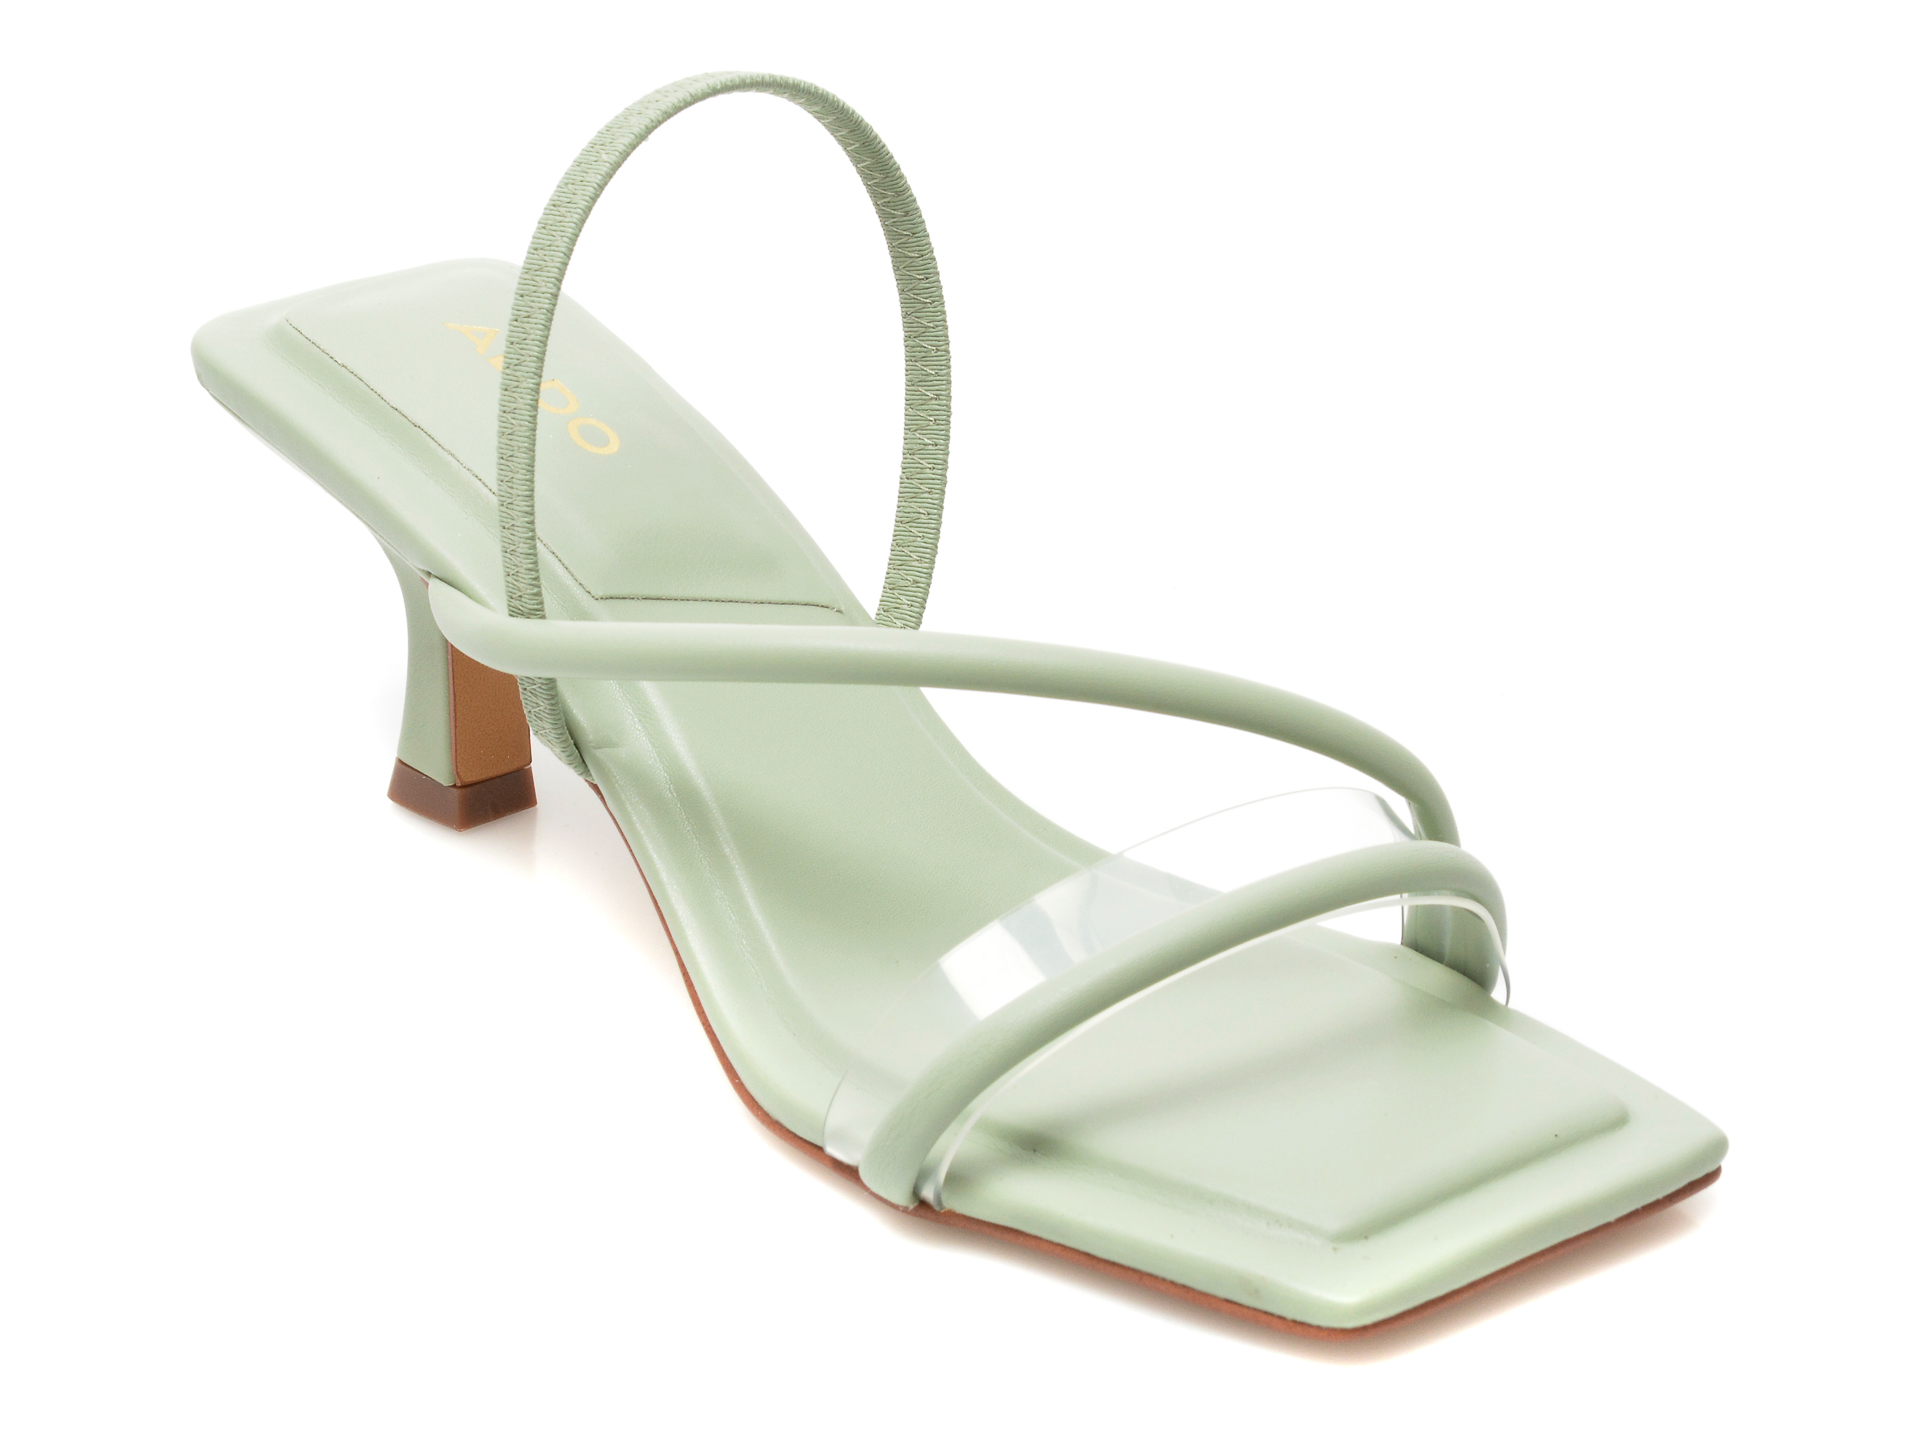 Sandale ALDO verzi, ZOEBAEN340, din piele ecologica Aldo